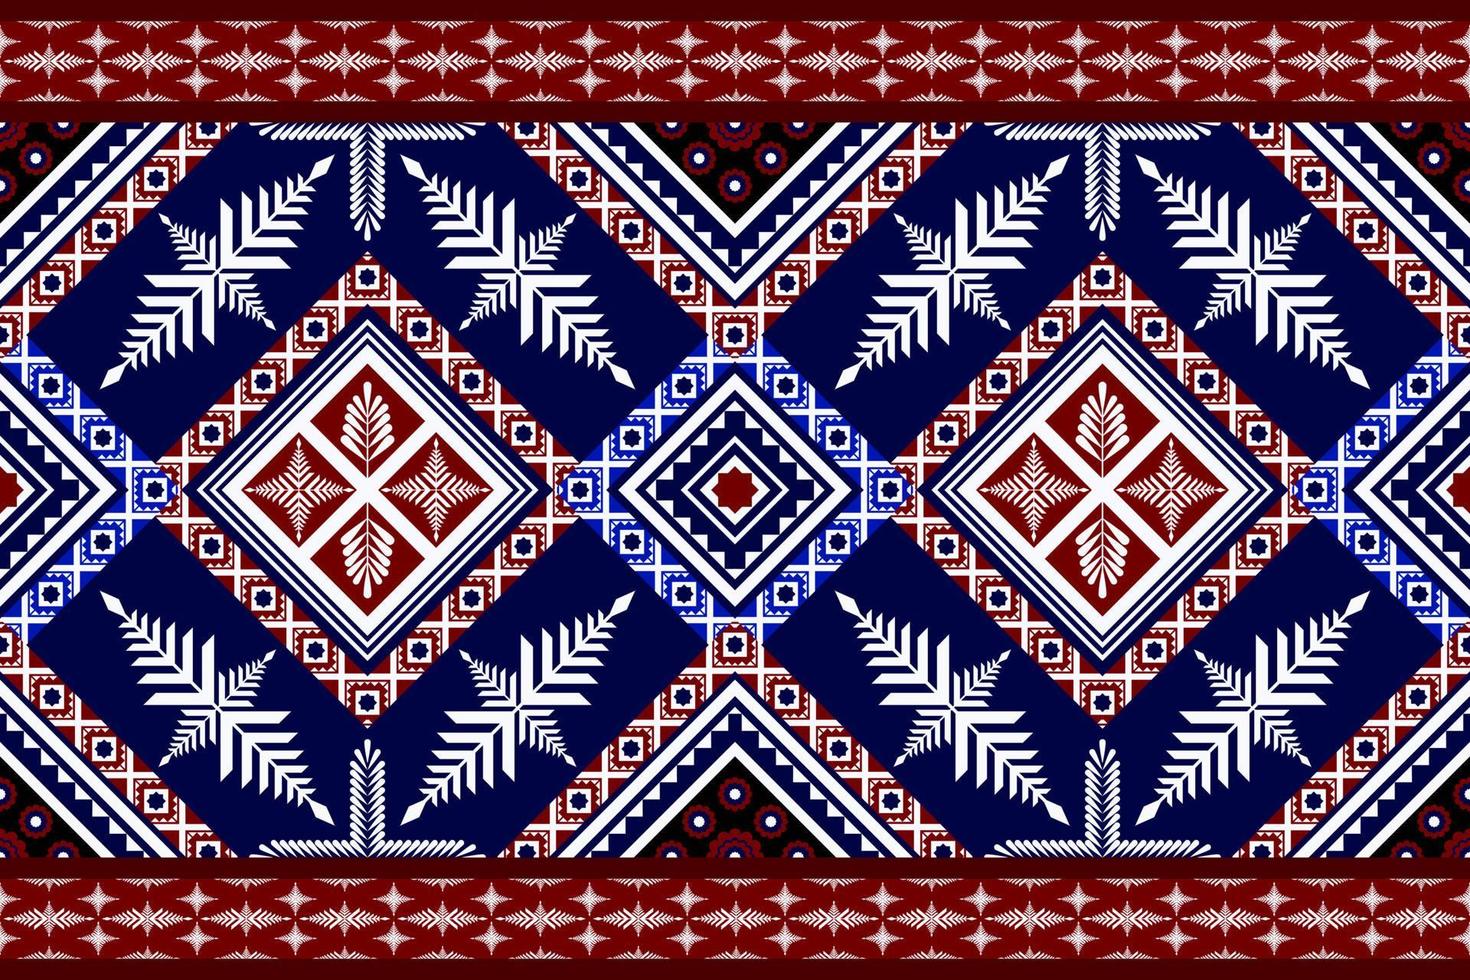 patrón geométrico abstracto,impresión,frontera,tradición, patrón sin costuras,ilustración,patrón geométrico vector